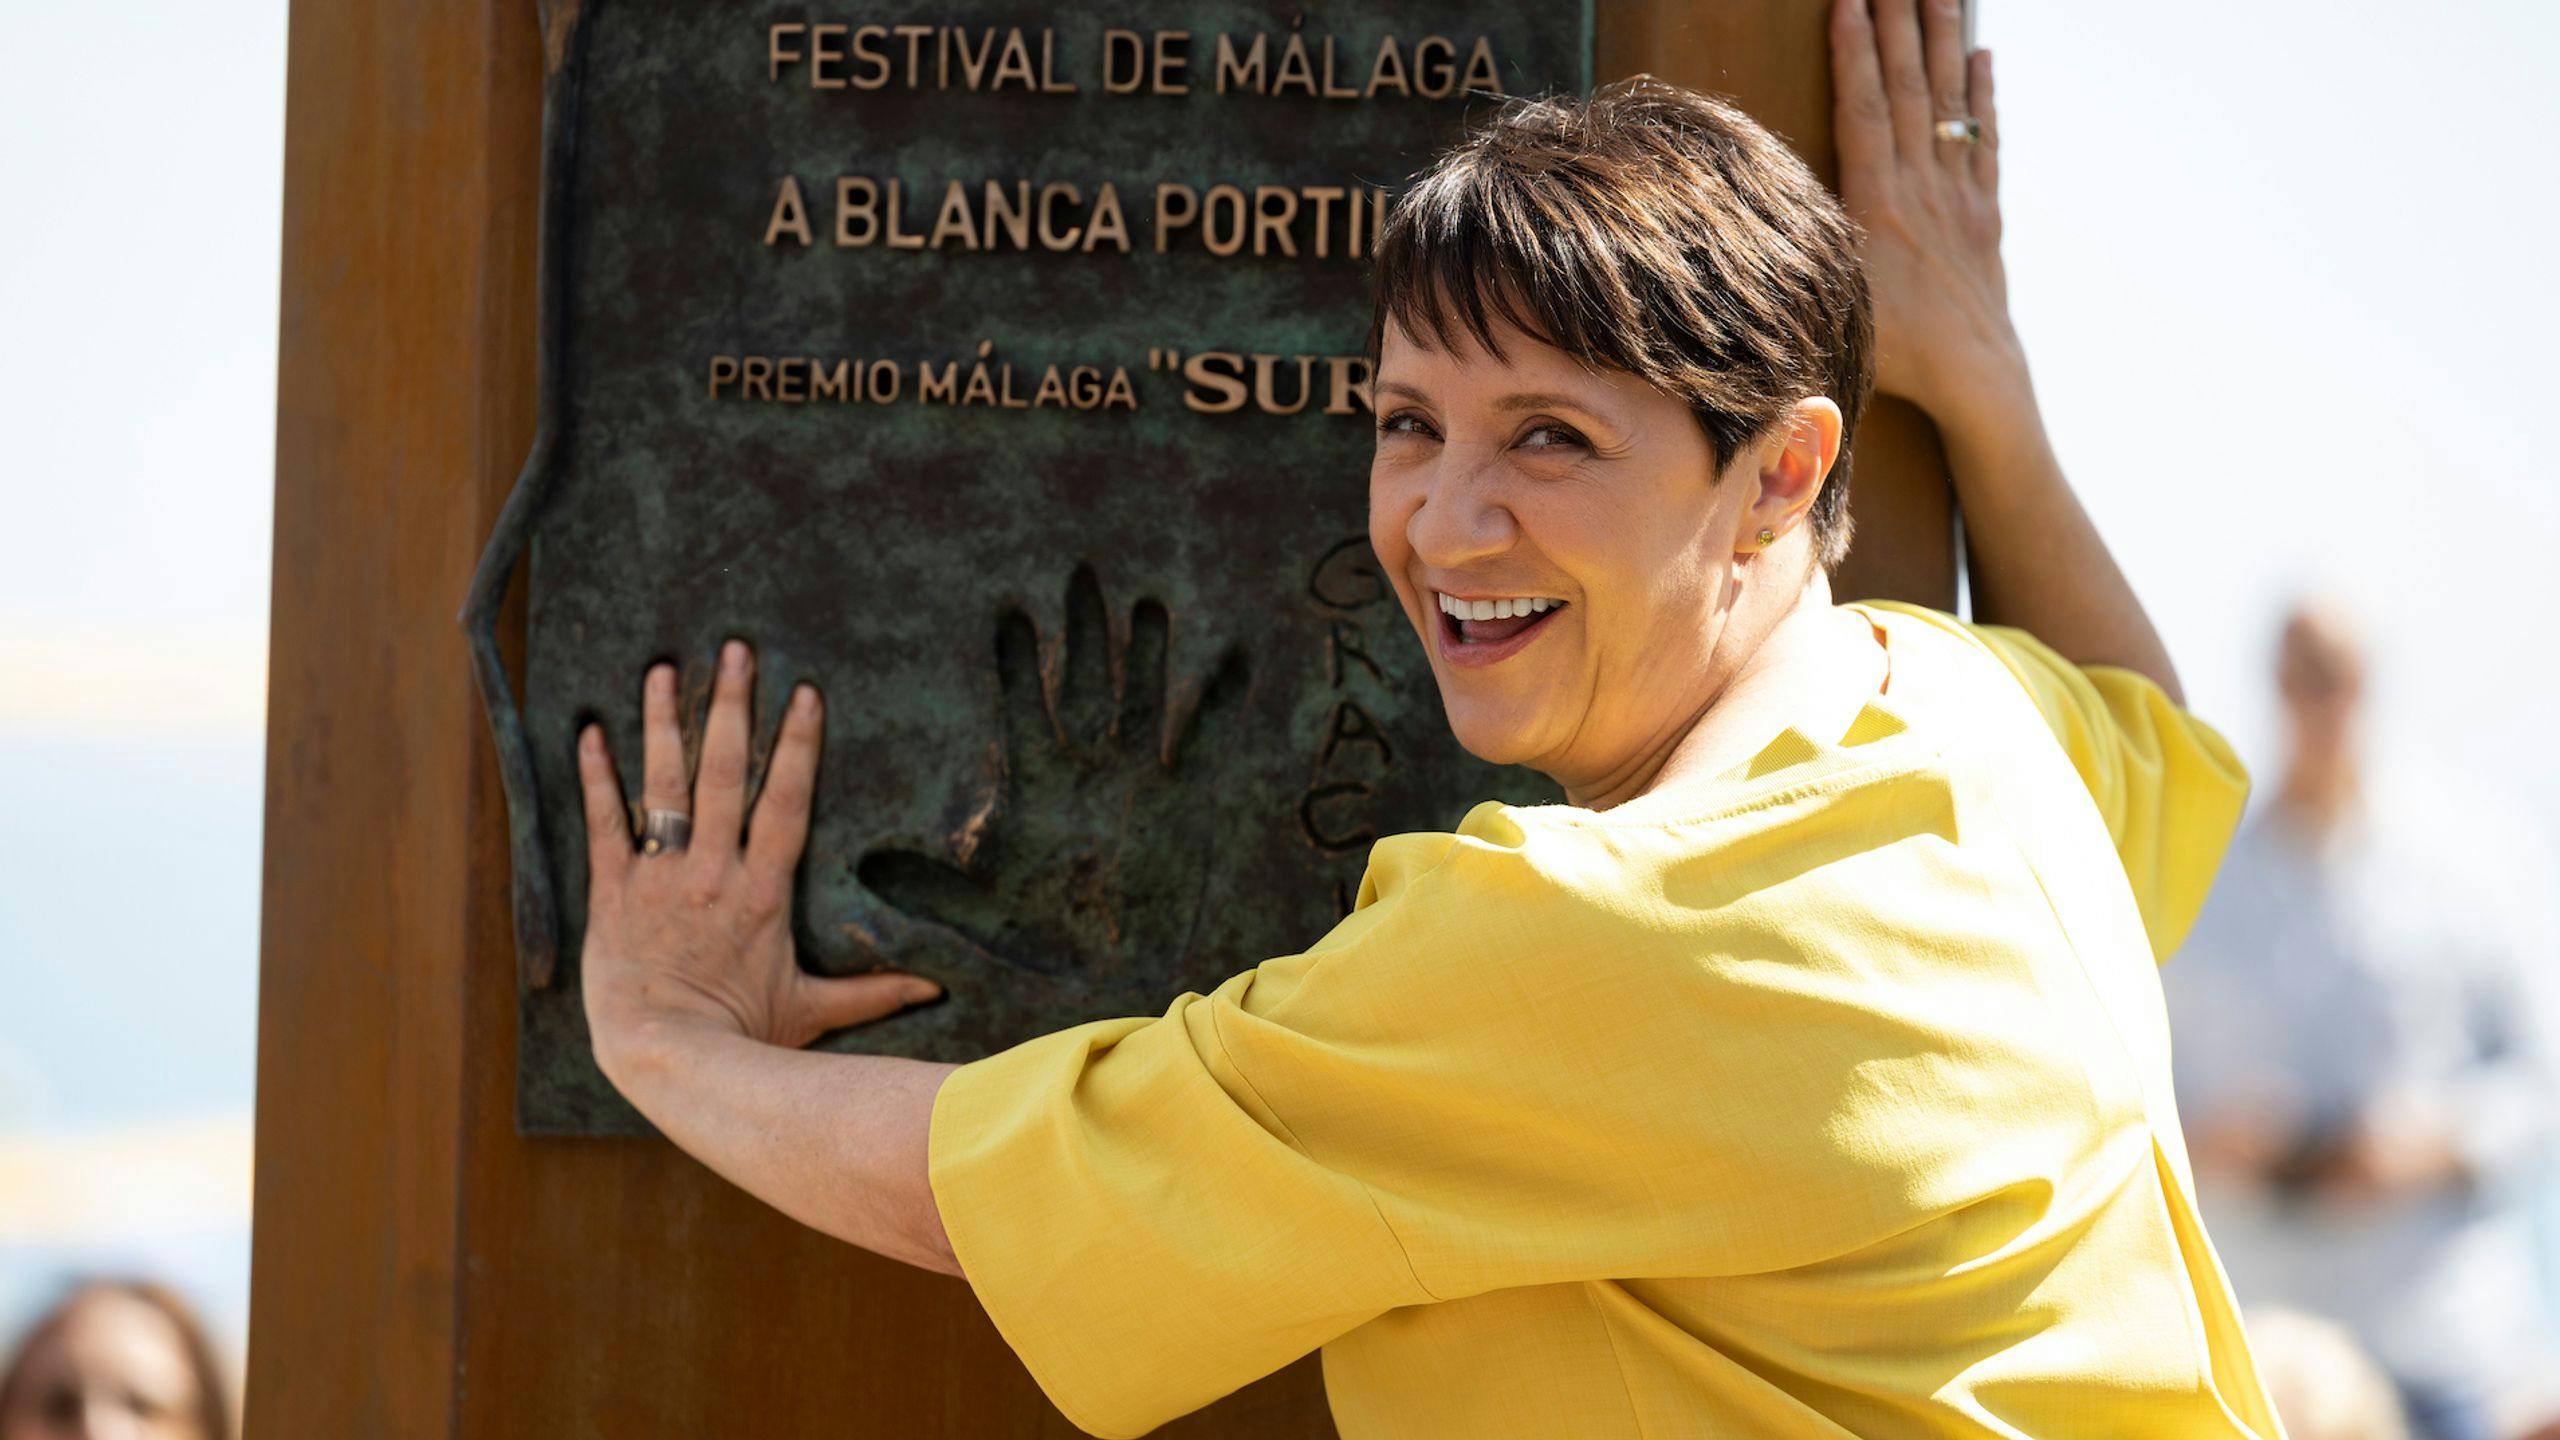 La actriz Blanca Portillo descubre el monolito dedicado a su Premio Málaga - SUR del Festival de Málaga